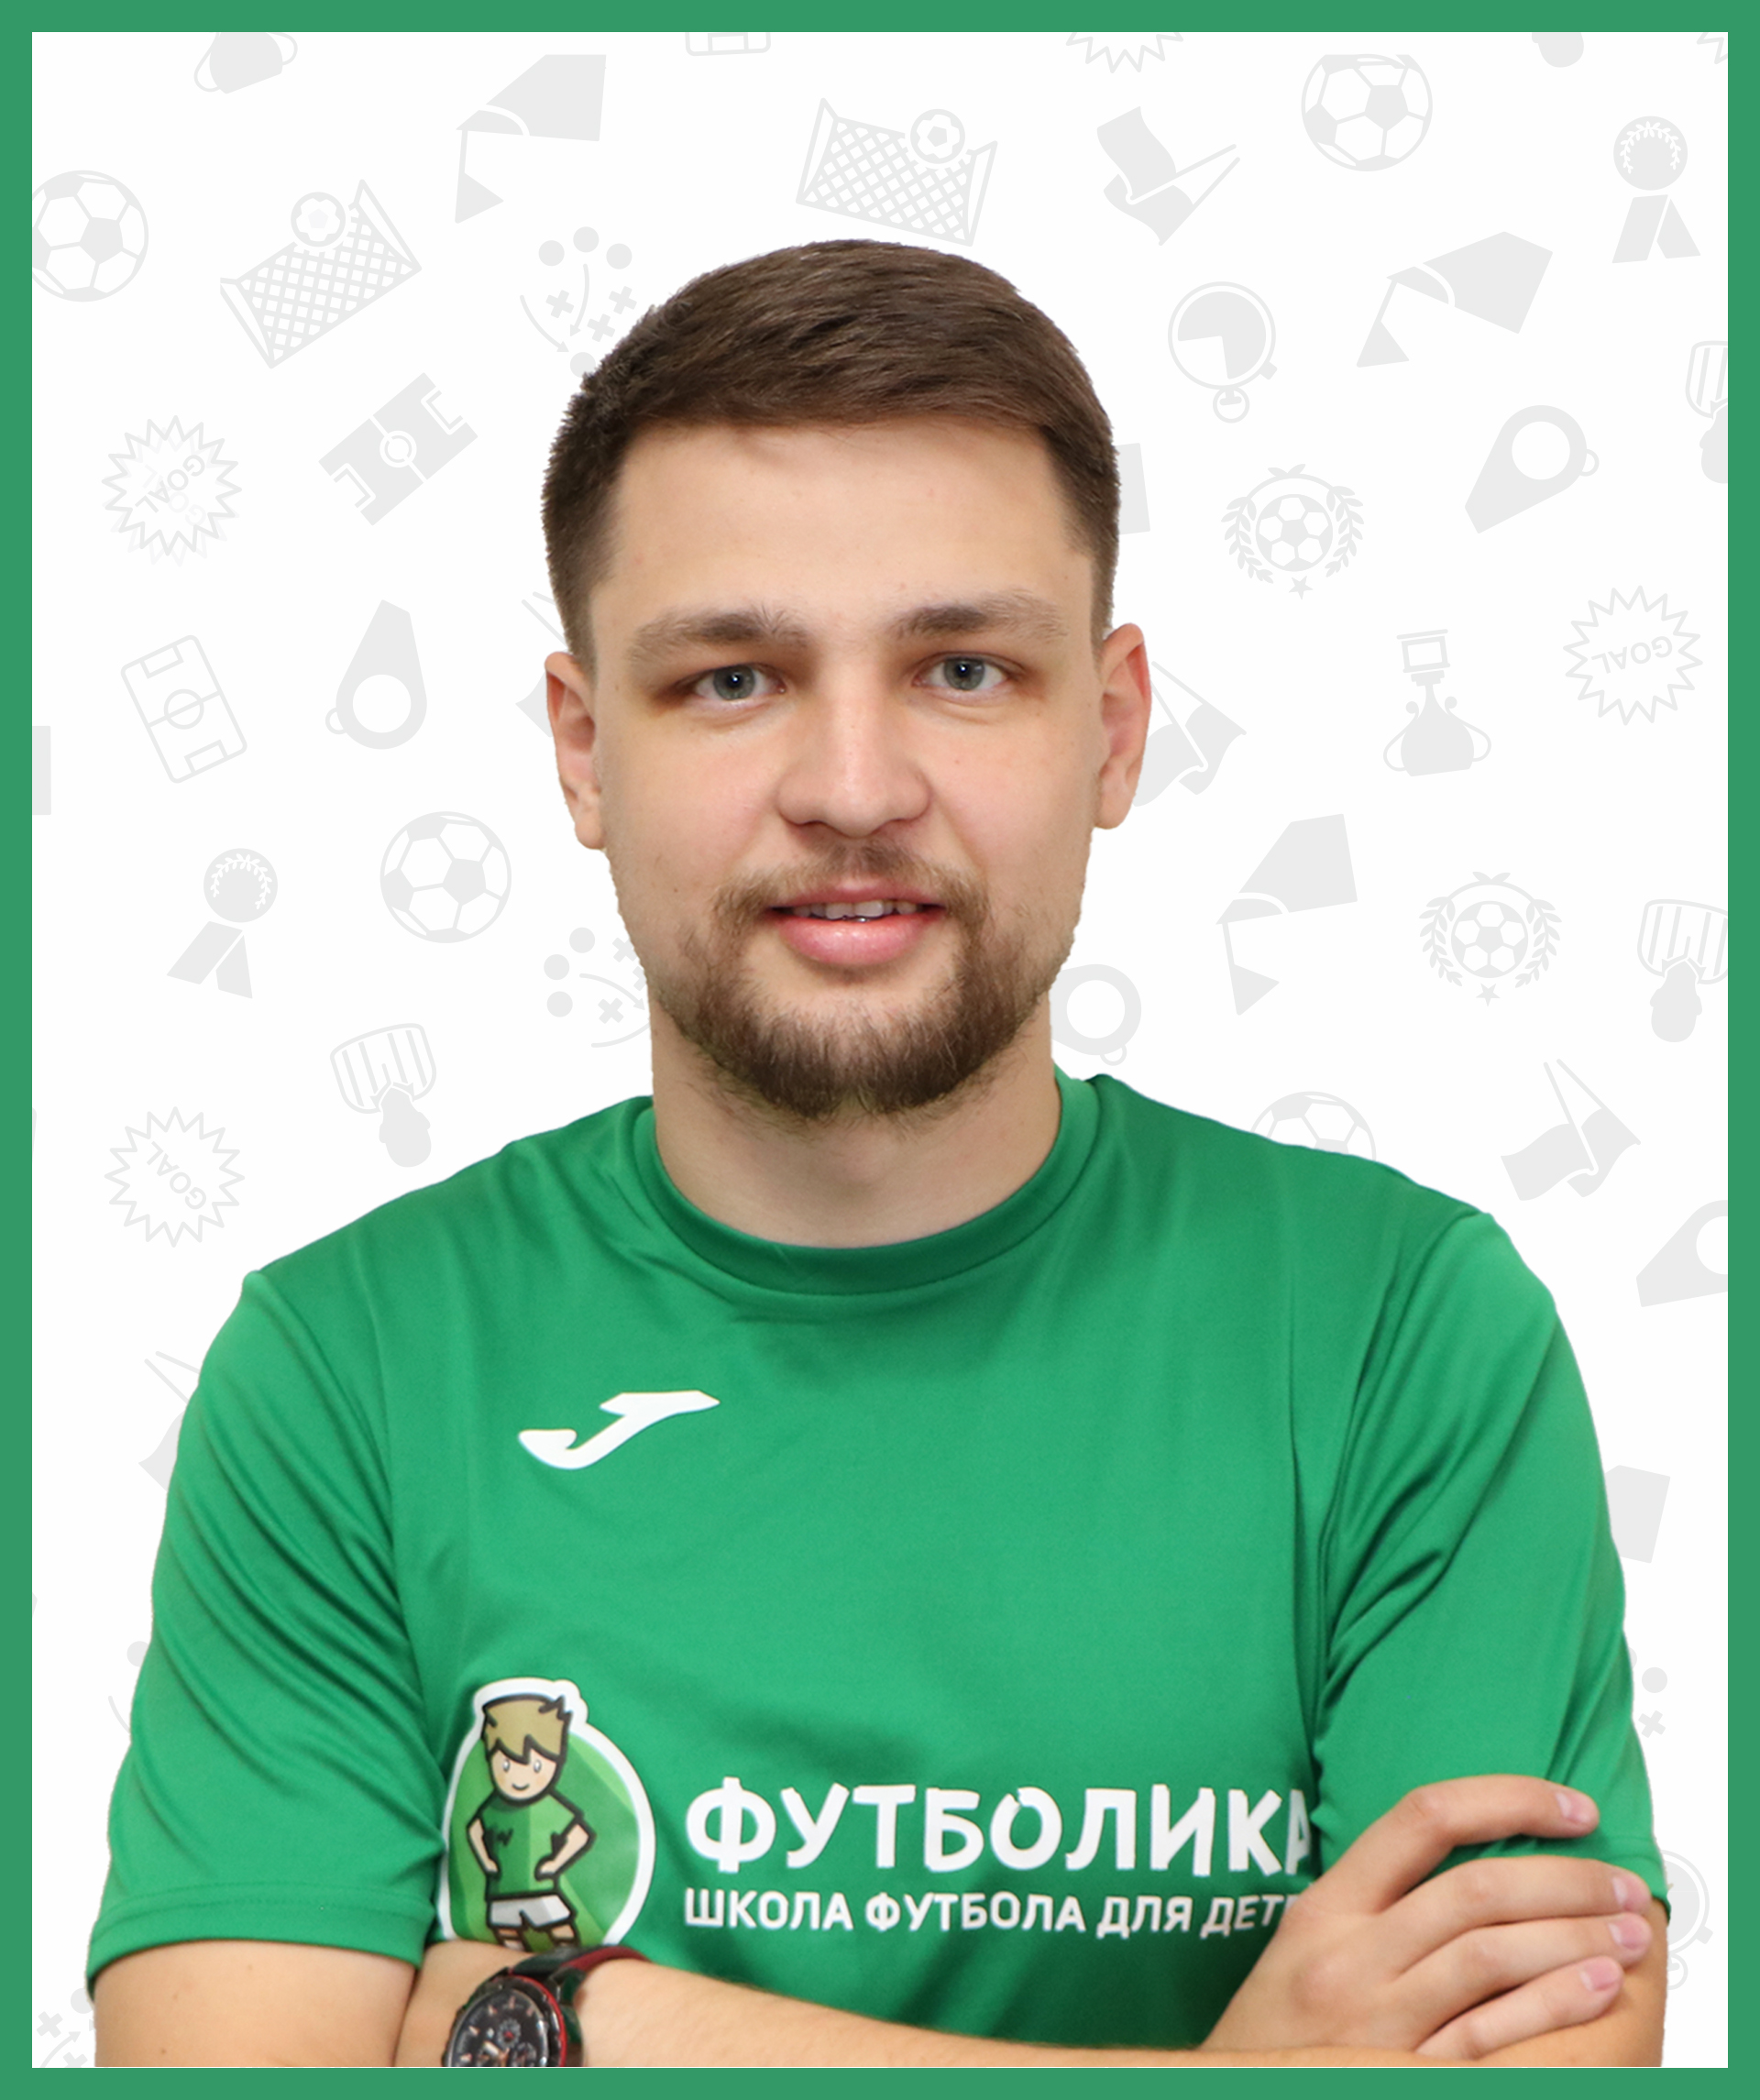 тренер футболики Кривоносов Дмитрий